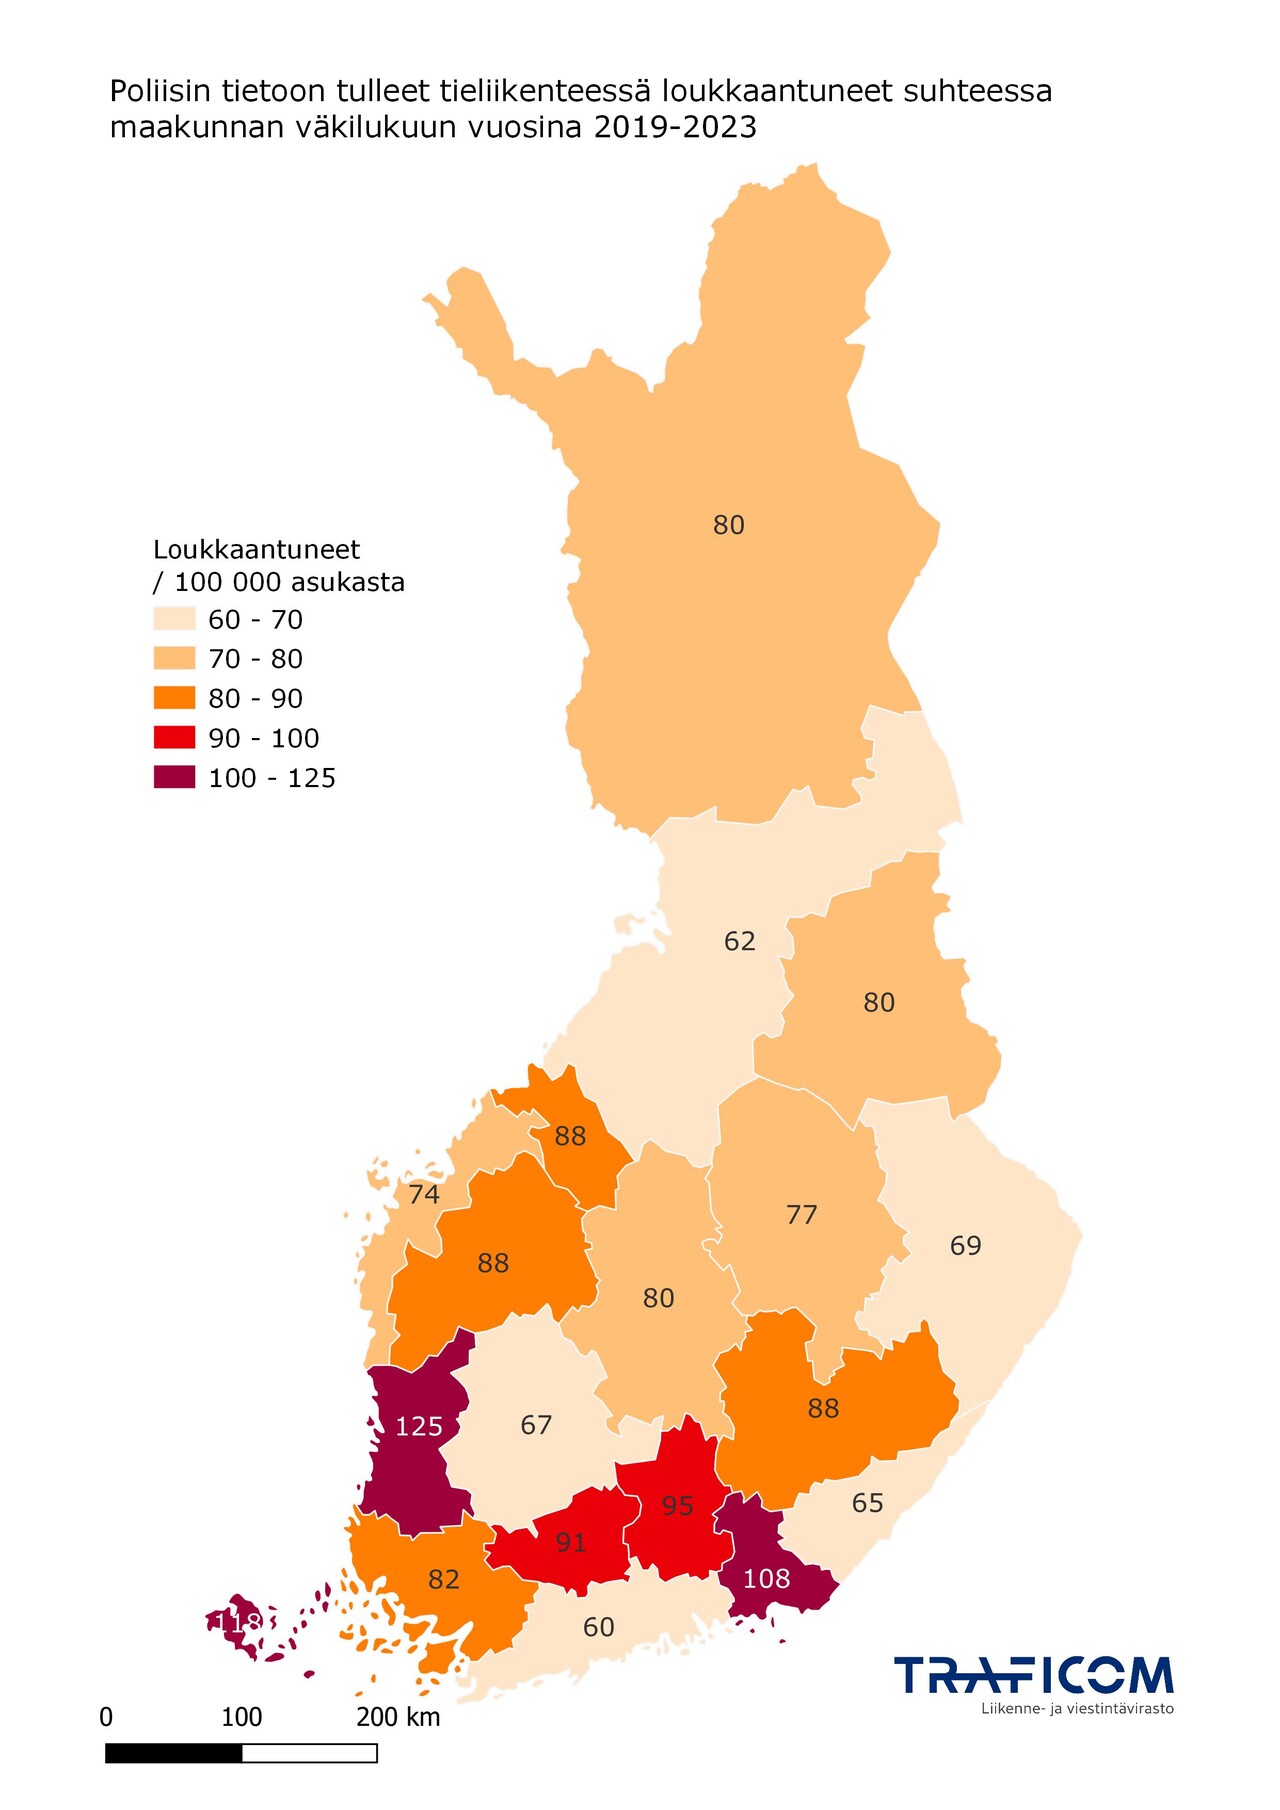 Kartta tieliikenteessä loukkaantuneista maakunnittain suhteessa väkilukuun